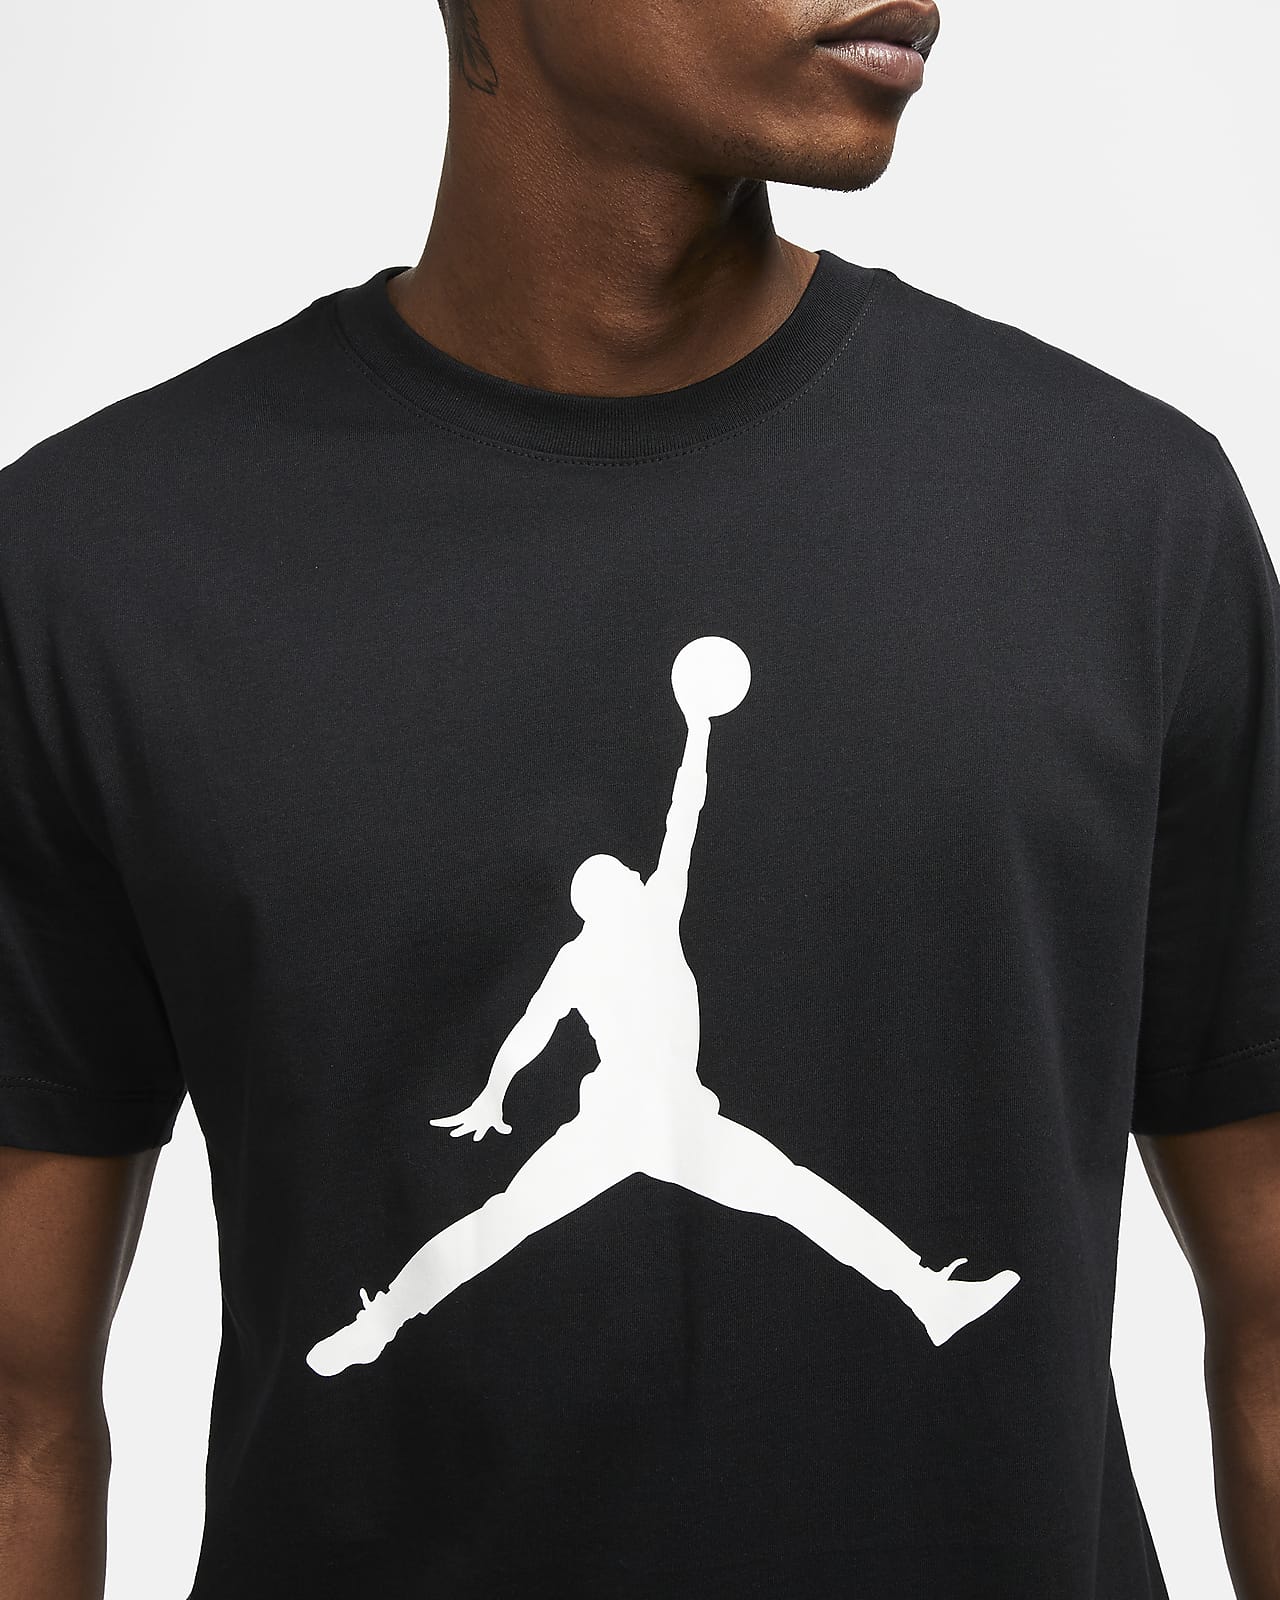 Nike公式 ジョーダン ジャンプマン メンズ Tシャツ オンラインストア 通販サイト